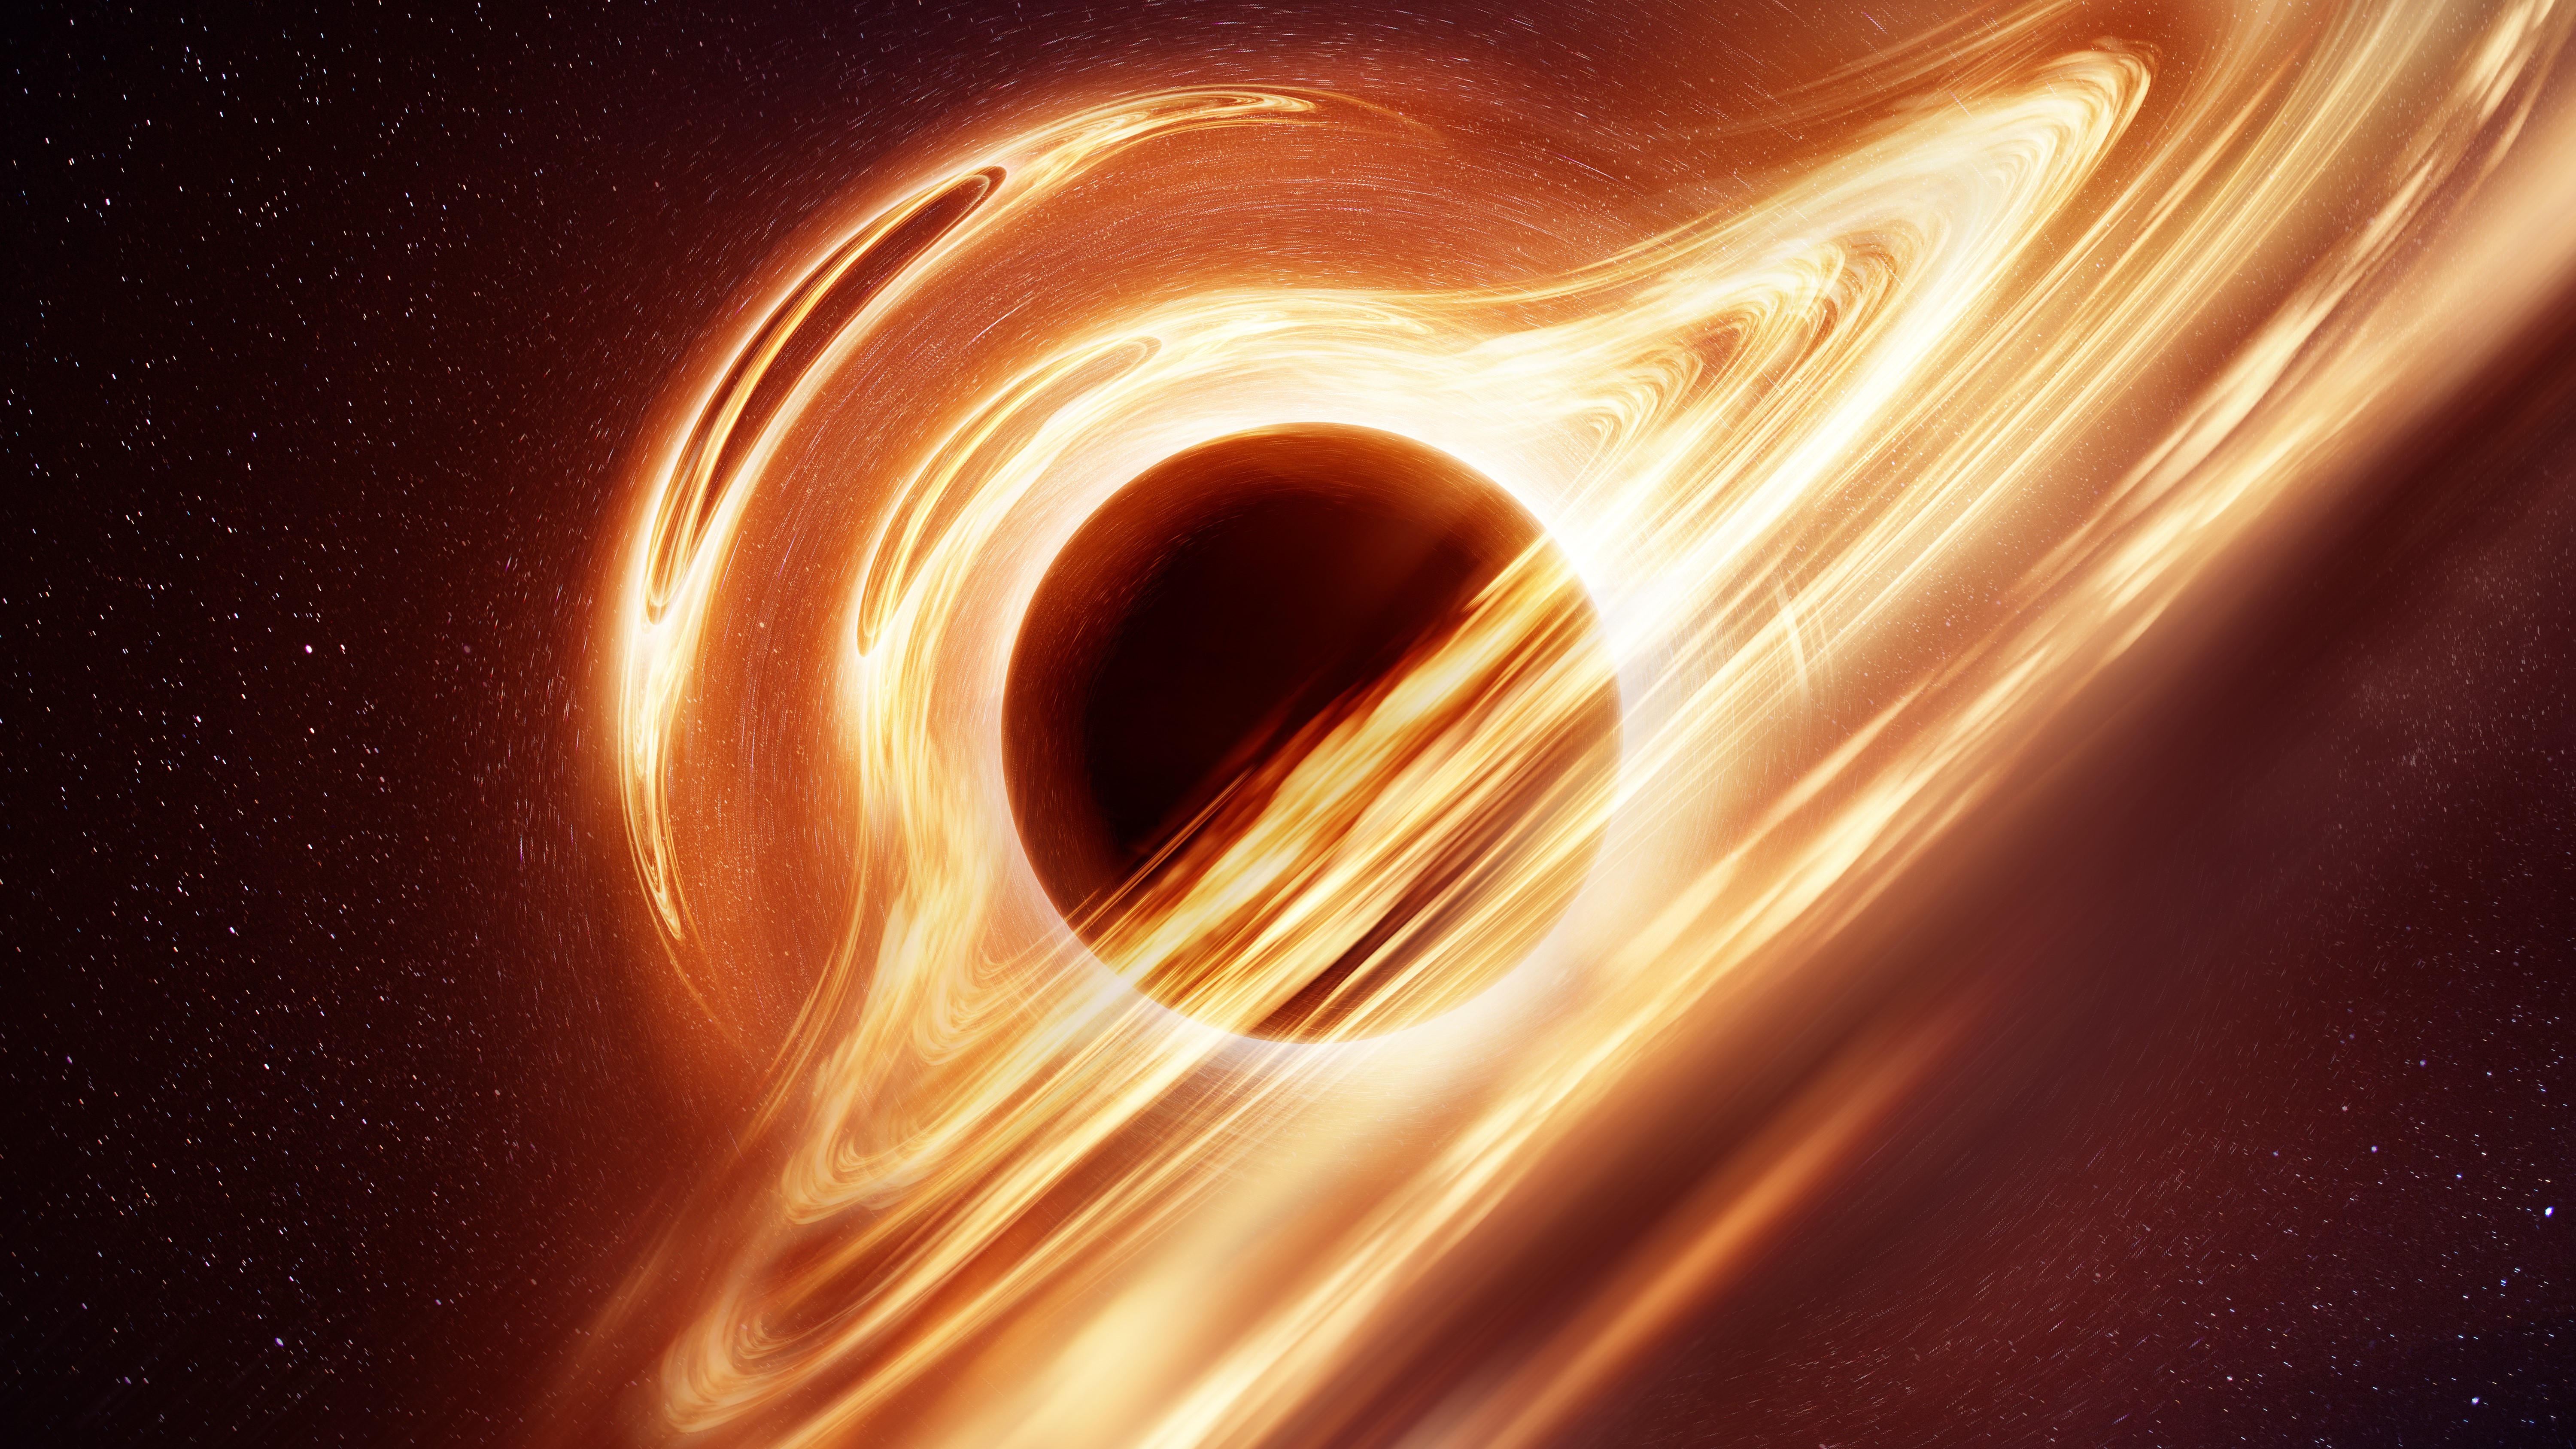 Orange yellow energy surrounding a black hole